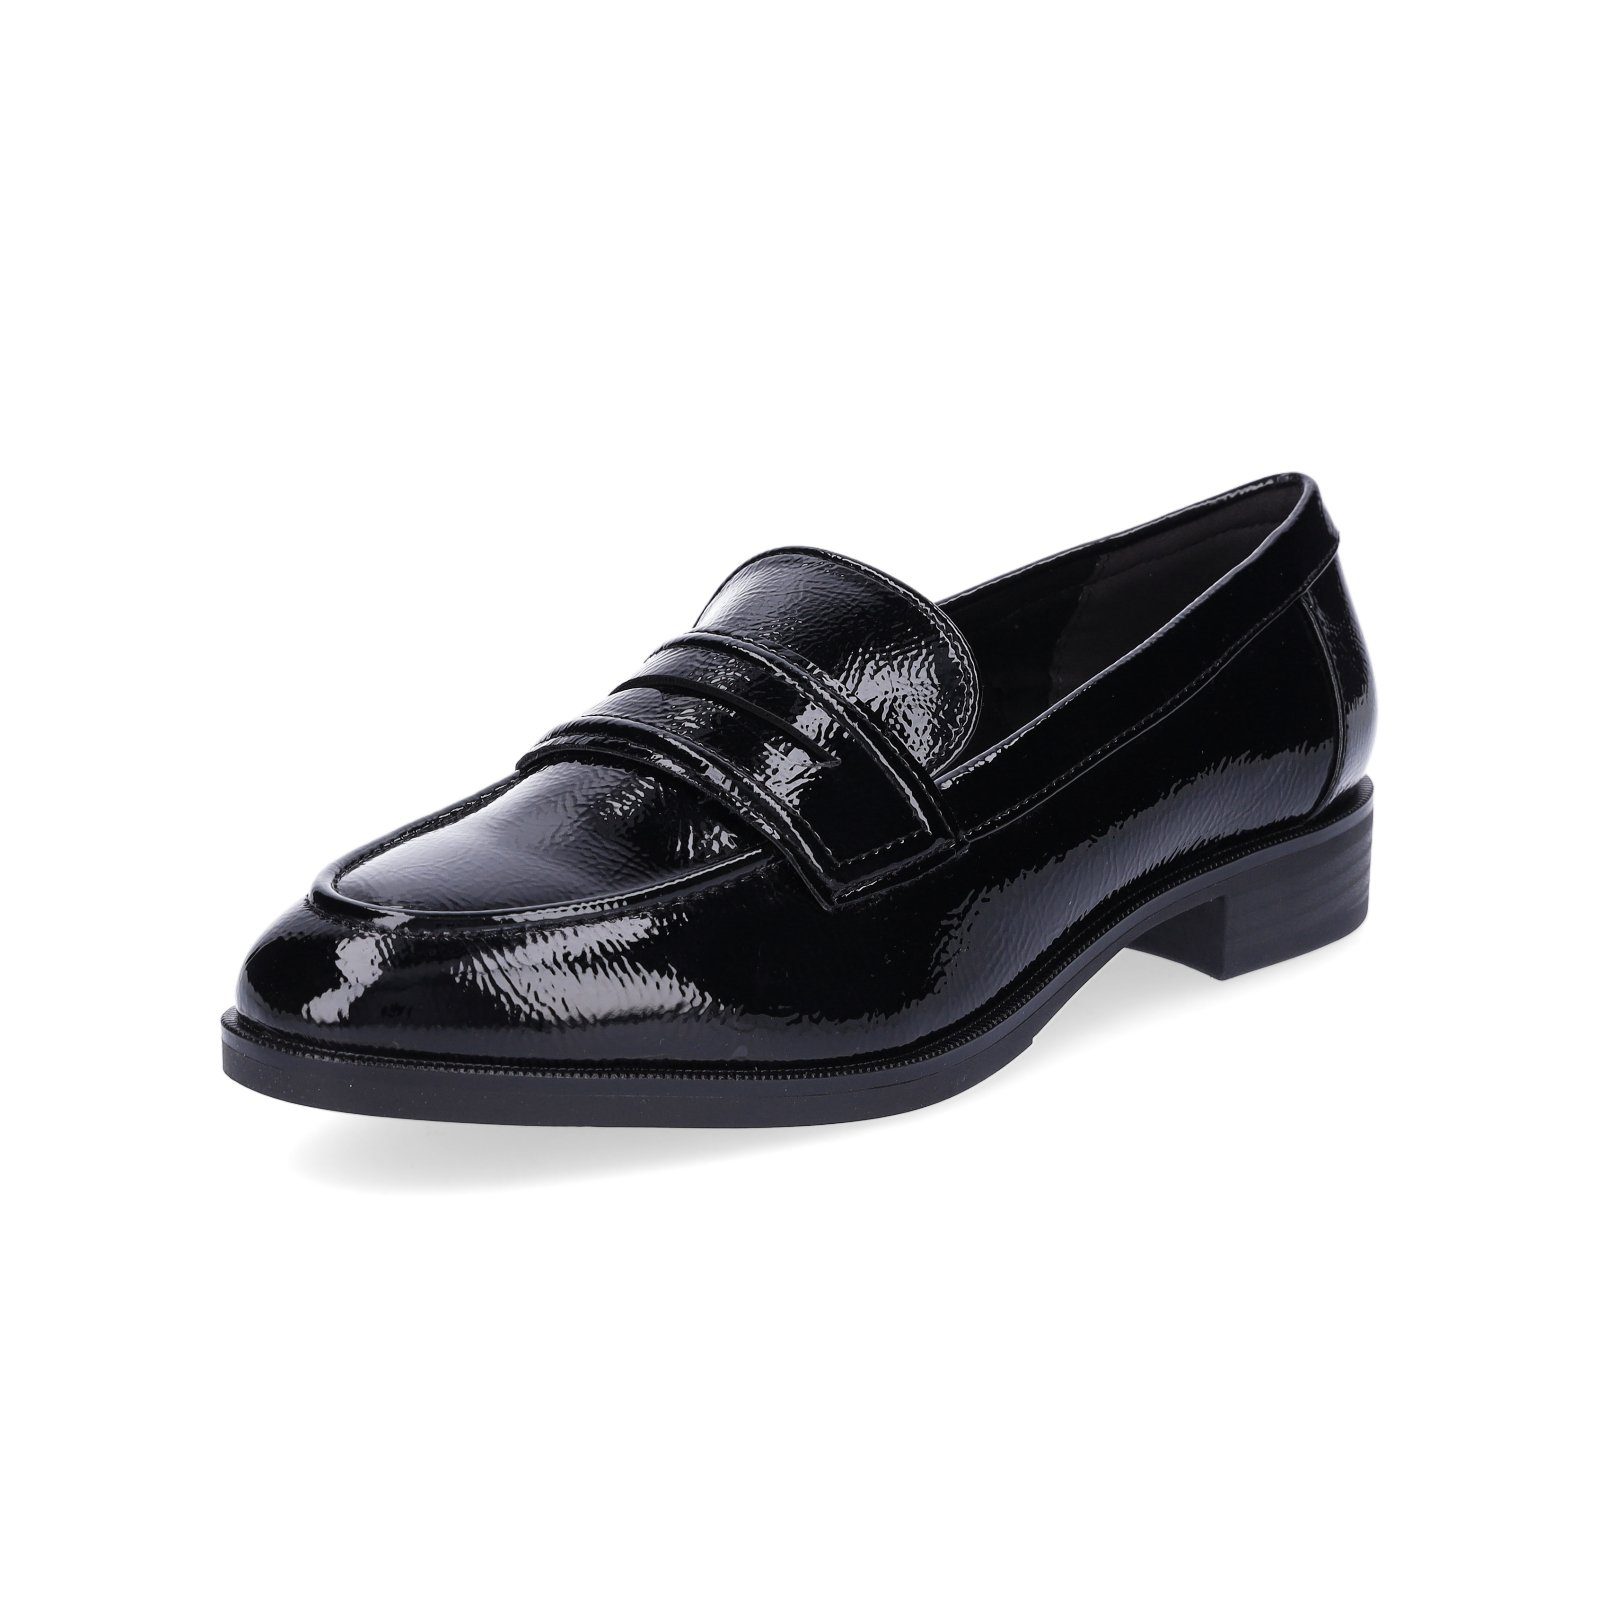 Tamaris Tamaris Damen Loafer schwarz Lack Slipper, klassisch und bequem,  eleganter Loafer, Touch-It Fußbett